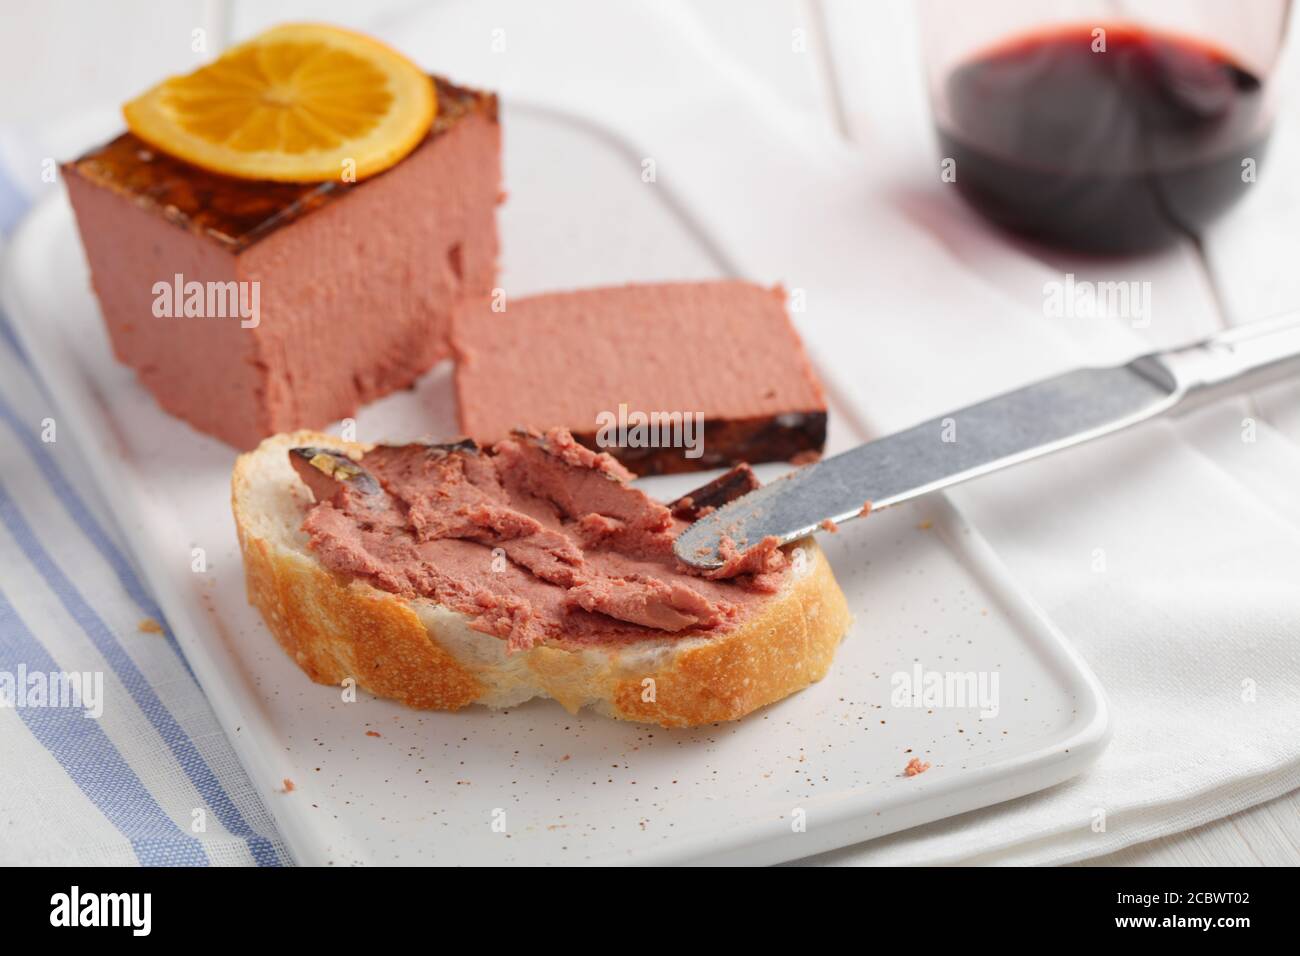 Sandwich avec pâté de canard sur une tranche de français frais baguette et une tasse de vin rouge Banque D'Images